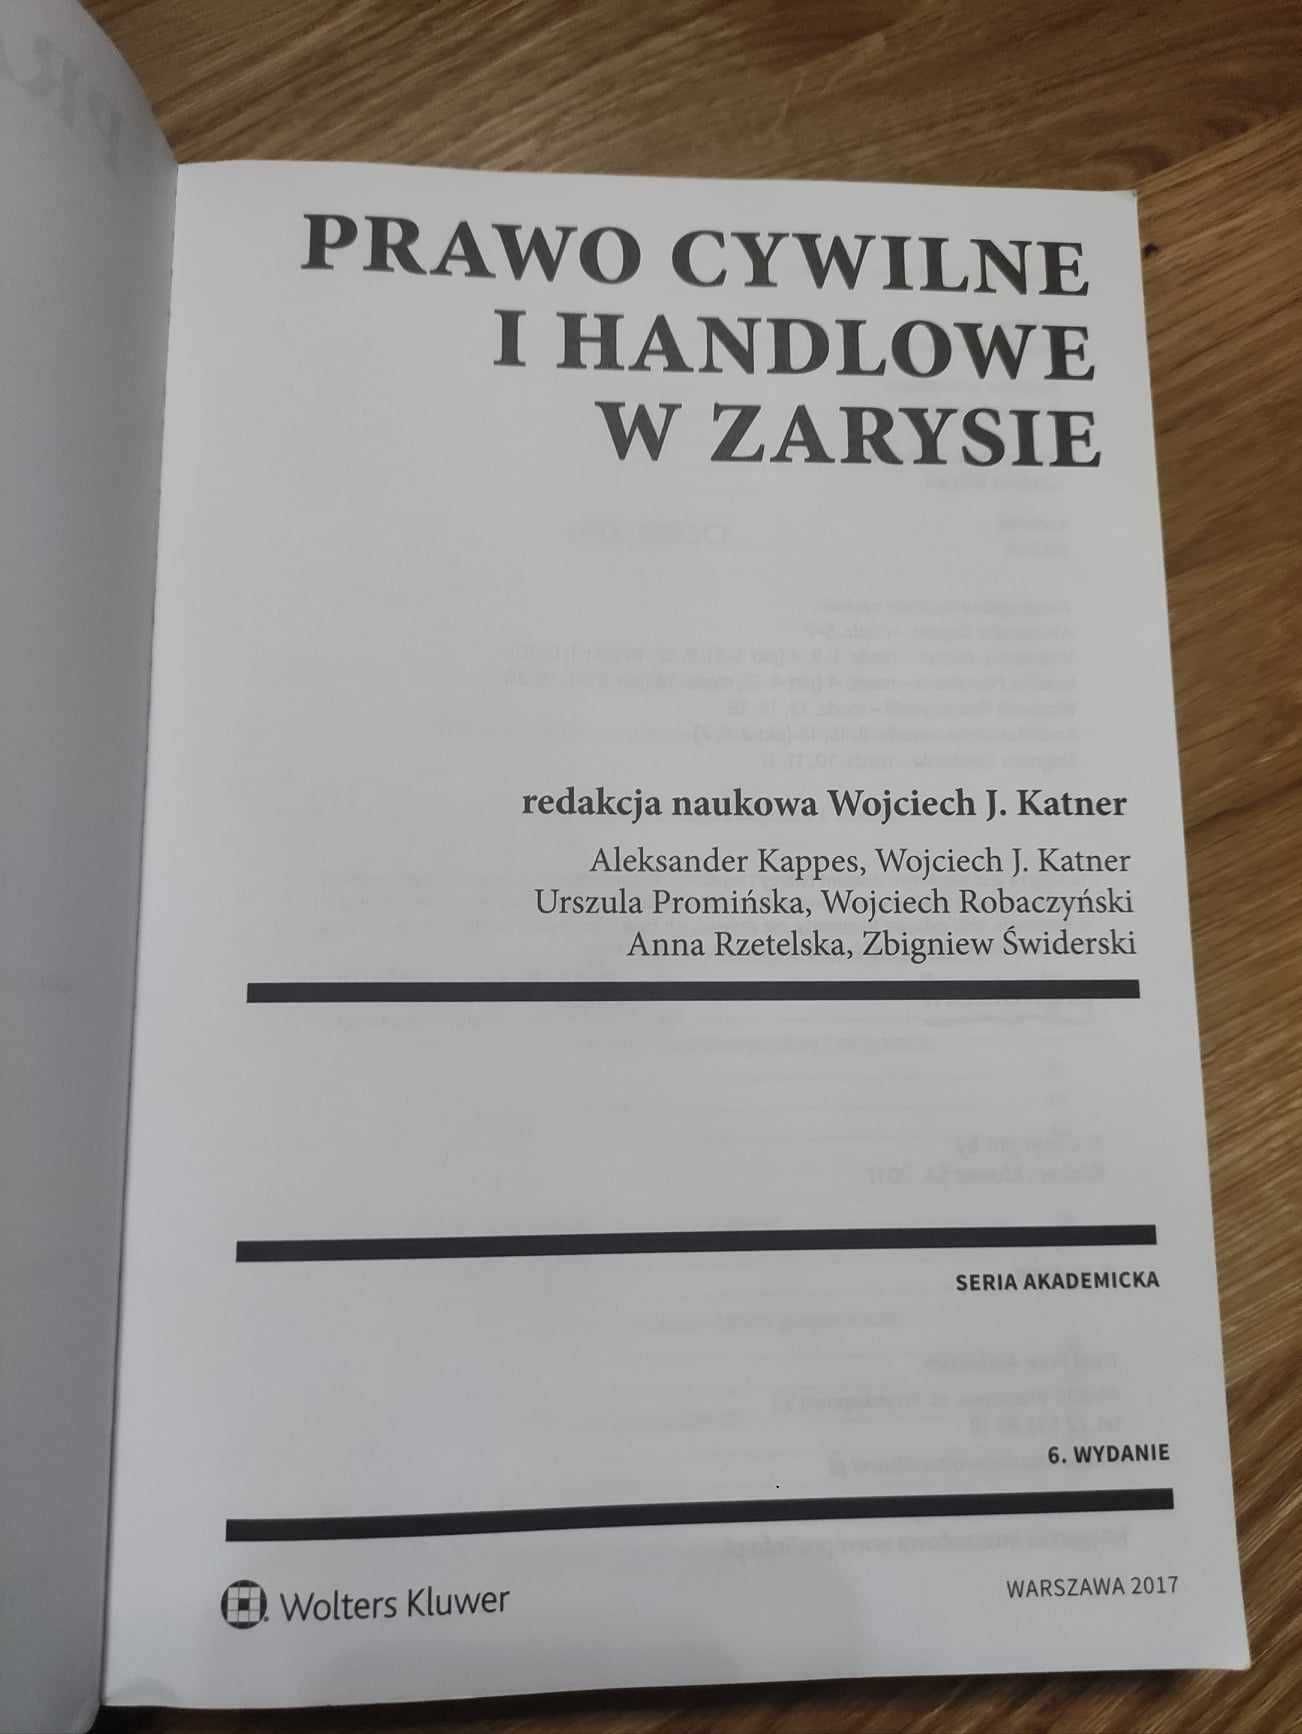 Prawo cywilne o handlowe w zarysie redakcja naukowa Wojciech J. Katner